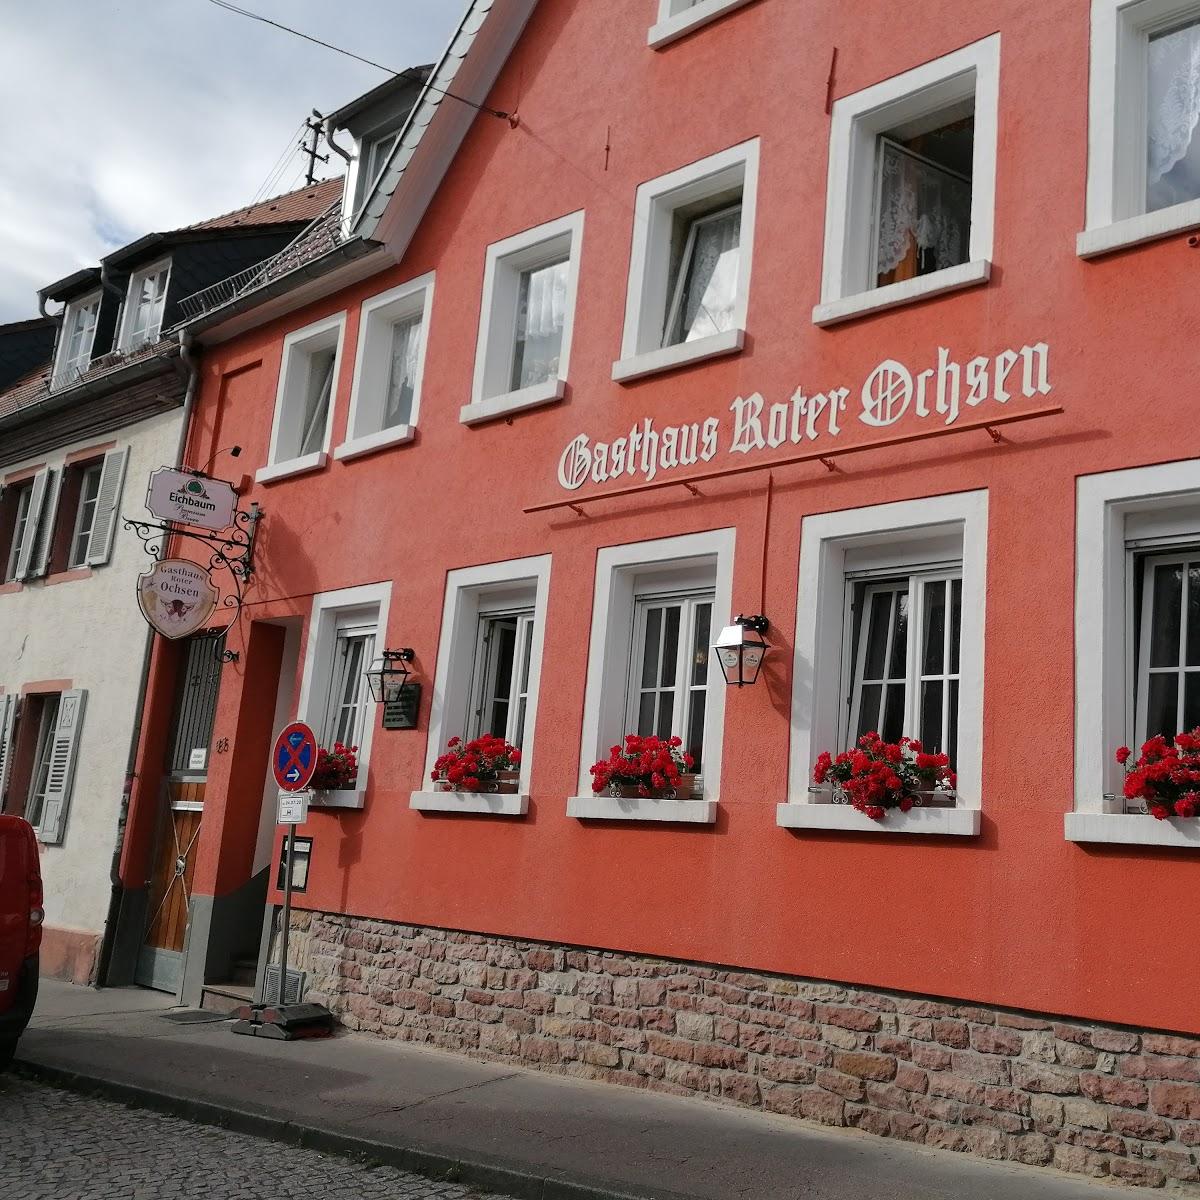 Restaurant "Roter Ochsen -Rohrbach" in  Heidelberg